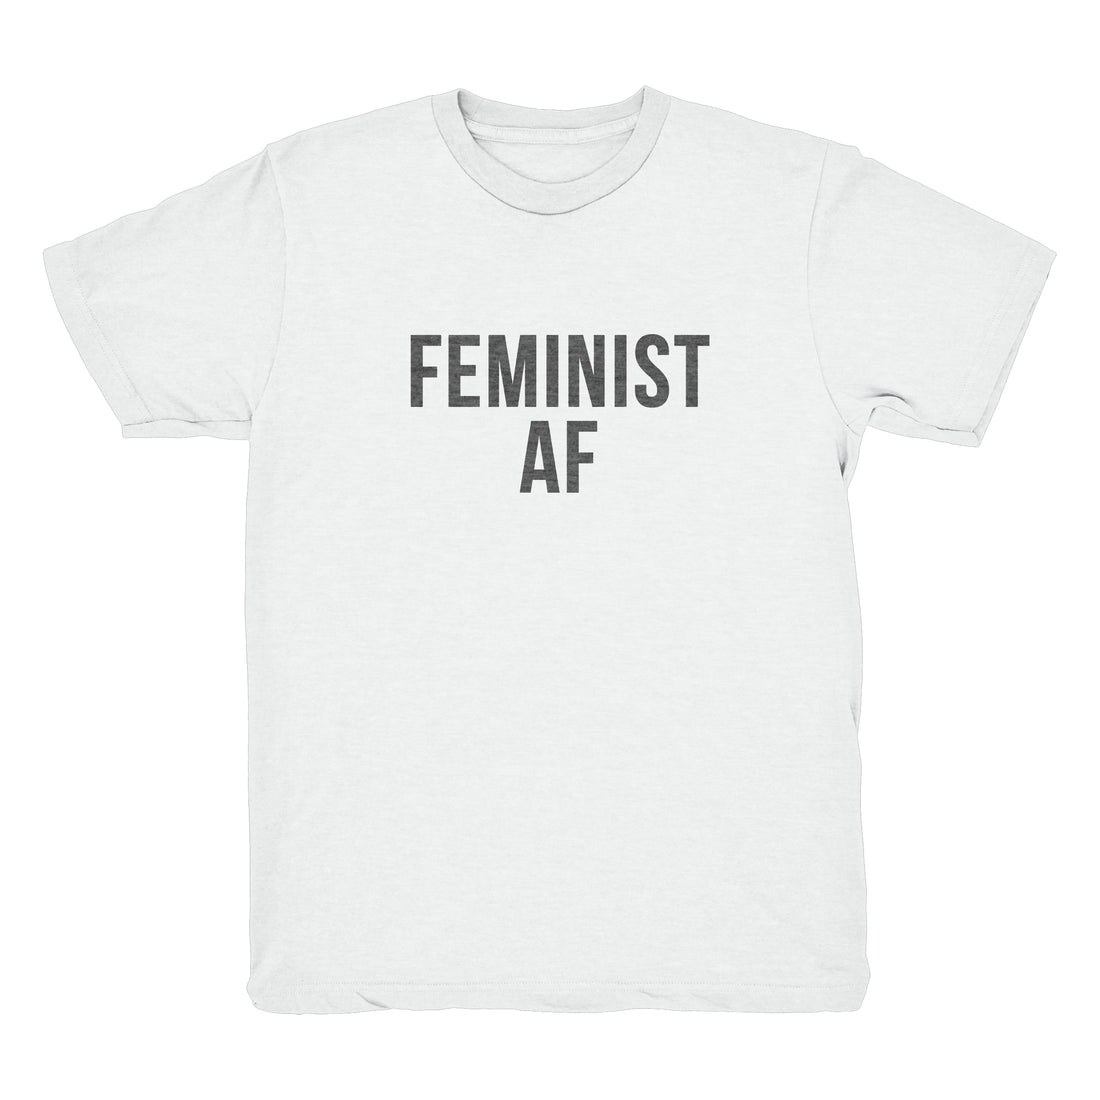 FEMINIST AF Toddler T-Shirt